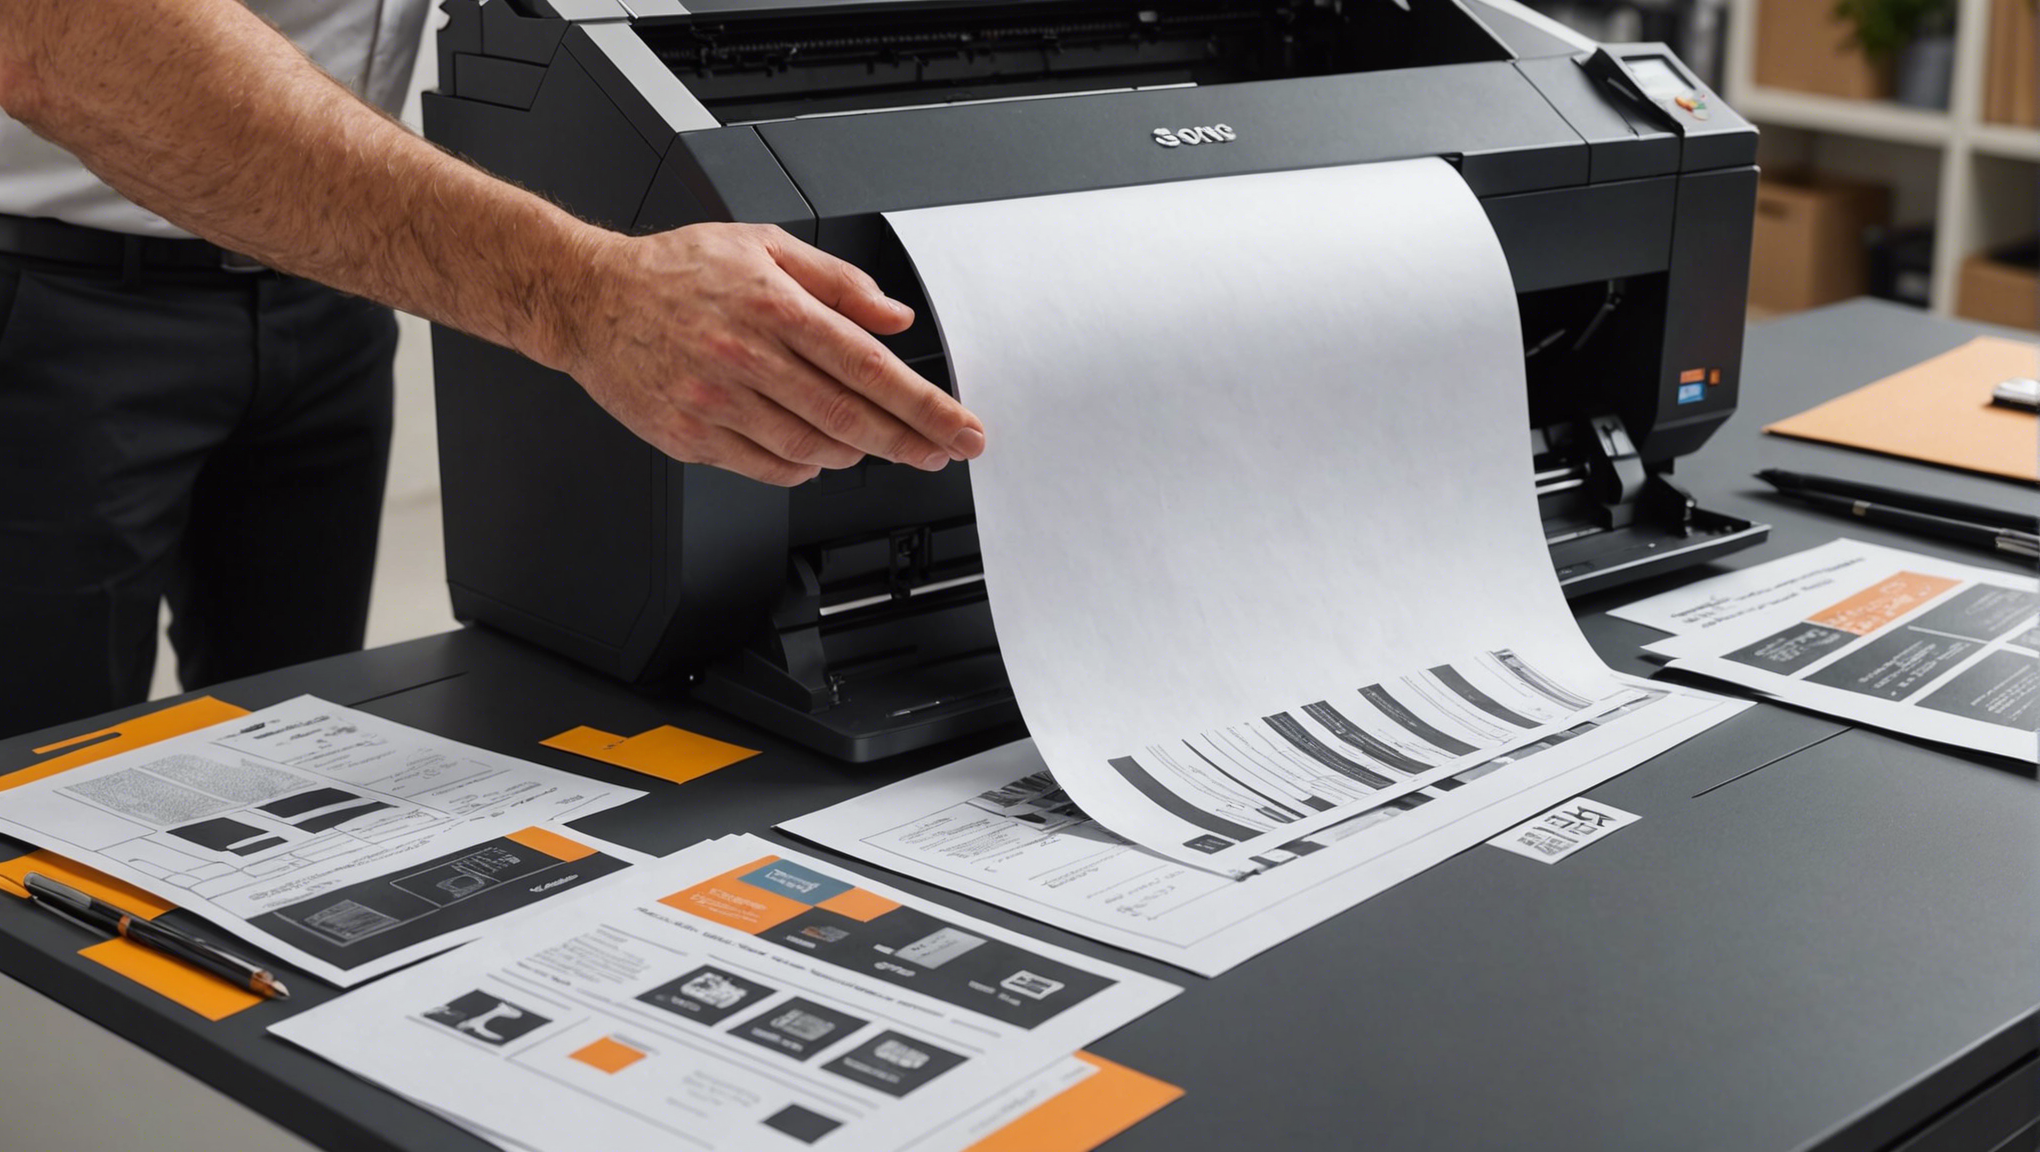 découvrez les meilleurs papiers pour les imprimantes jet d'encre professionnelles à prix abordables pour une qualité d'impression professionnelle.